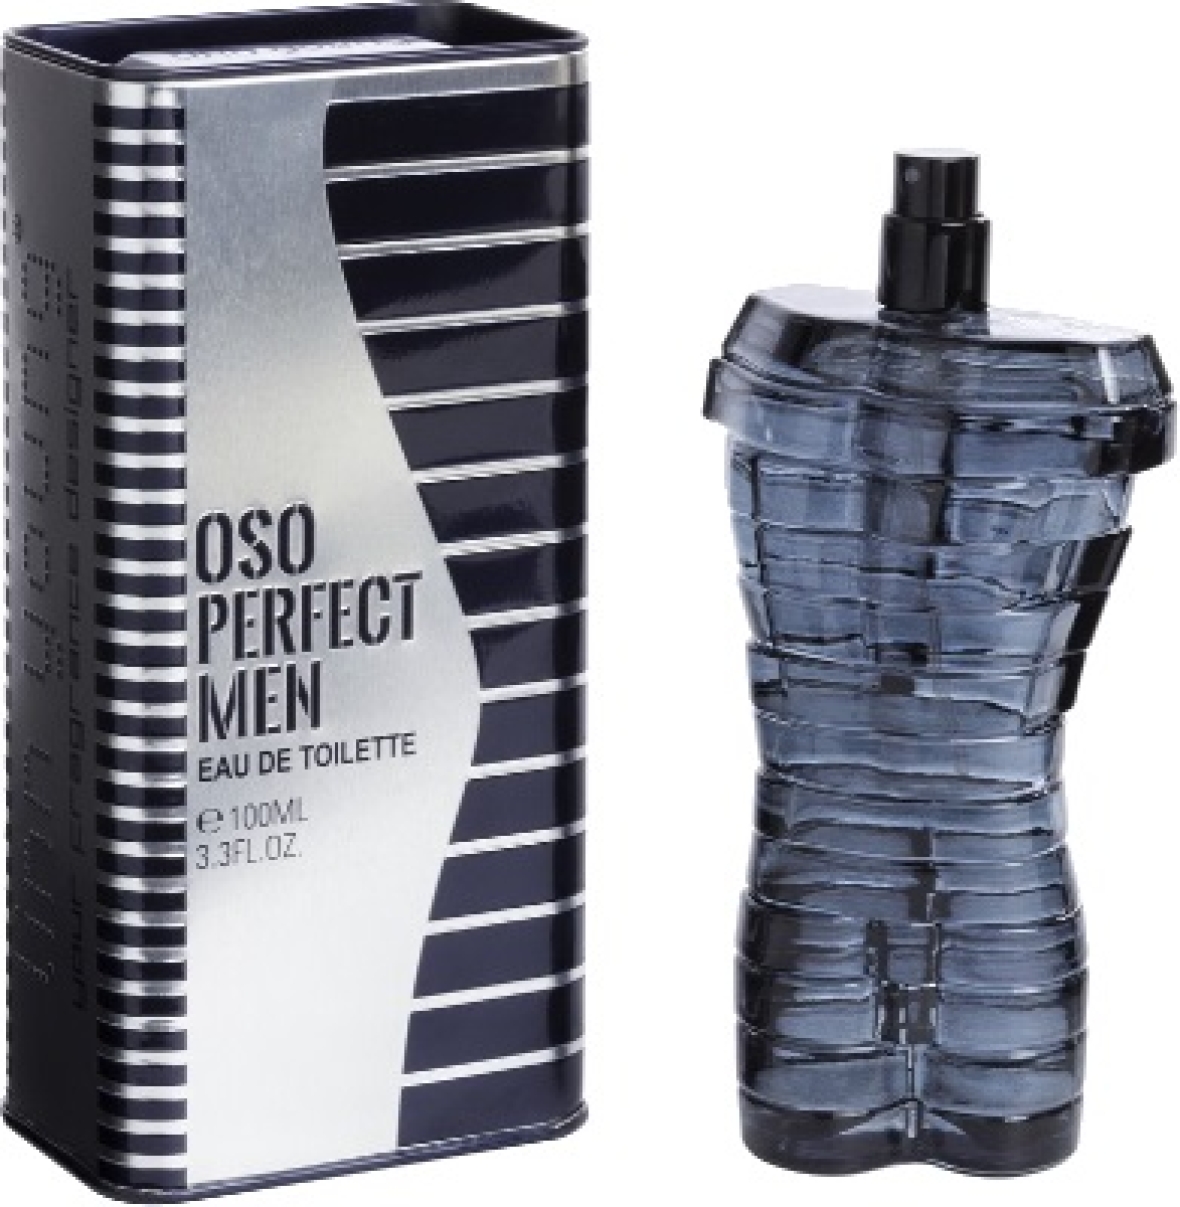 Notre gamme de parfums SH4. OSO PERFECT MEN Financer voyage scolaire